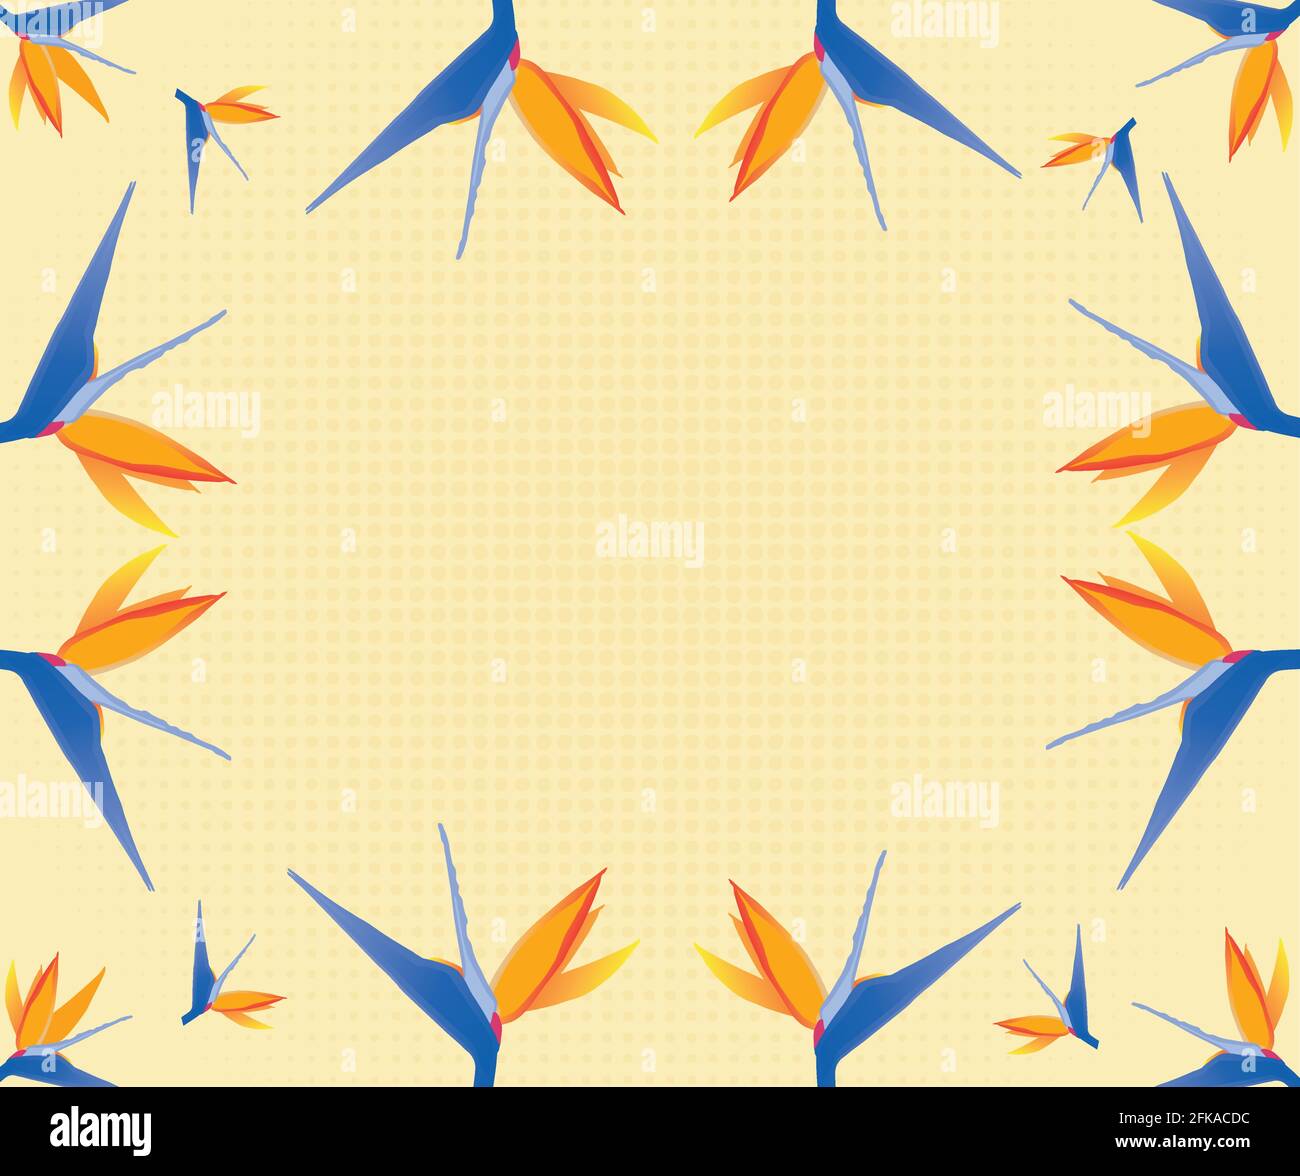 oiseau ou fleur de paradis sur fond jaune et de la place pour message au centre Illustration de Vecteur